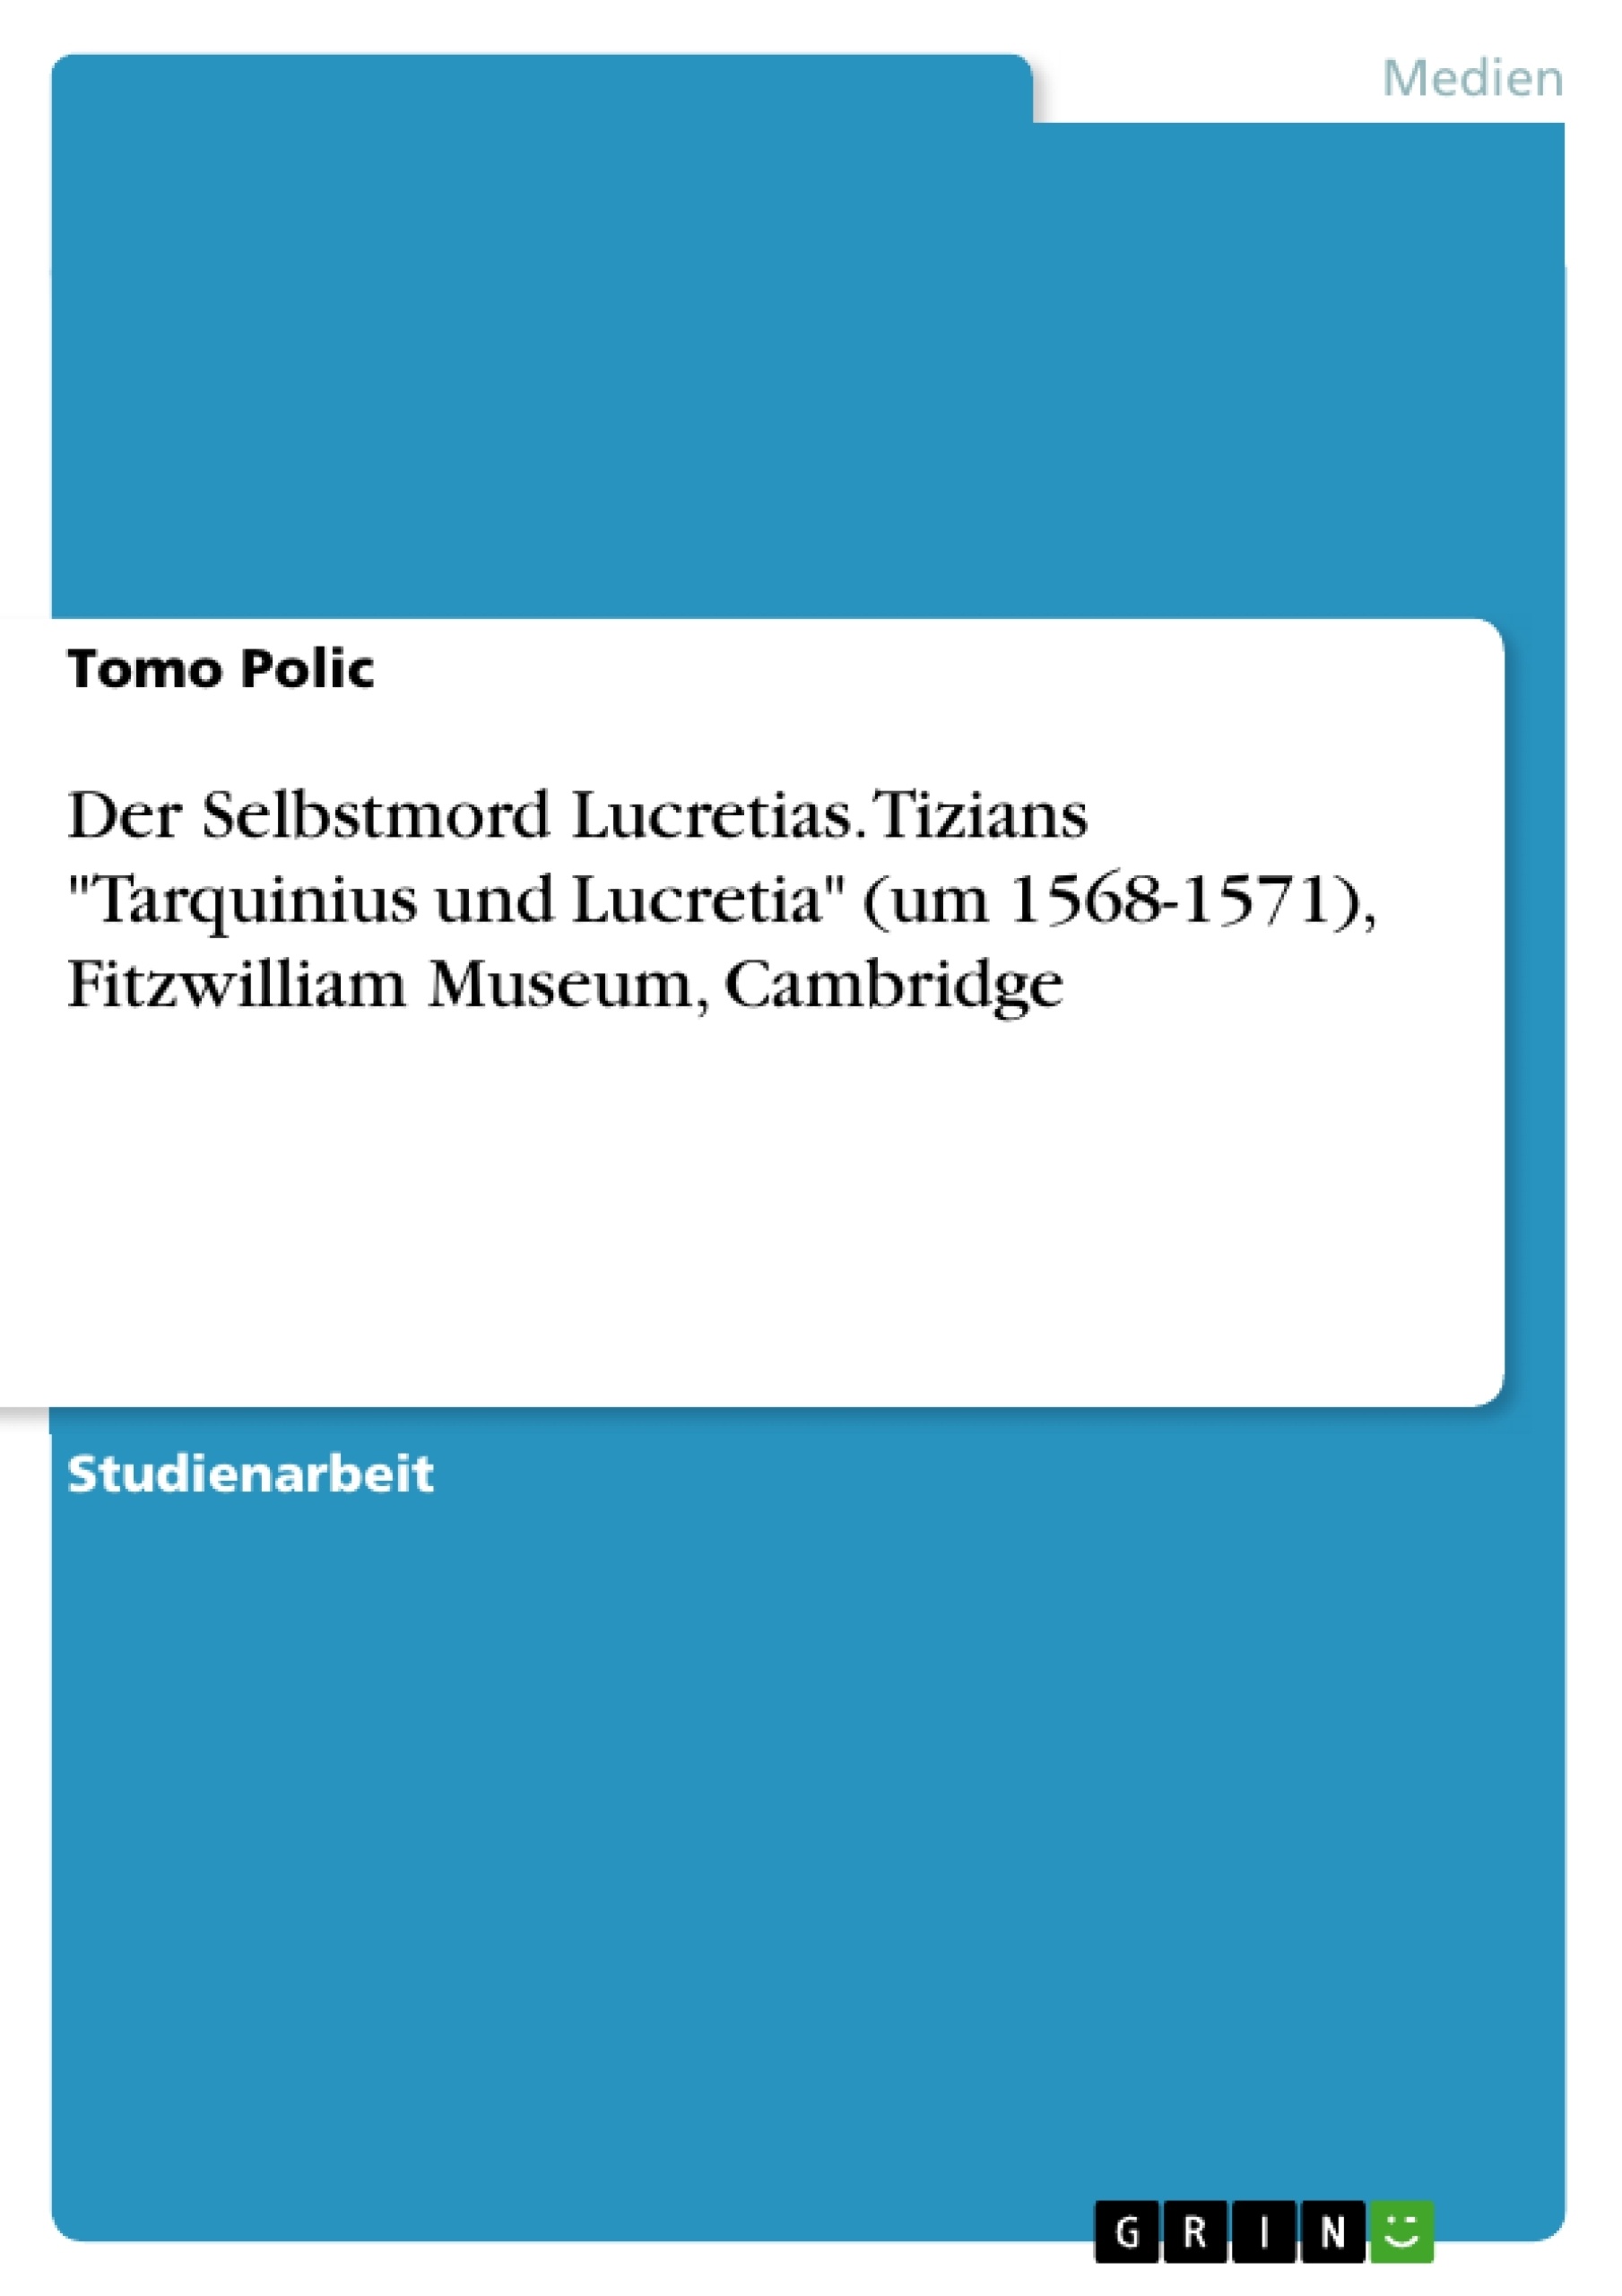 Title: Der Selbstmord Lucretias. Tizians "Tarquinius und Lucretia" (um 1568-1571), Fitzwilliam Museum, Cambridge